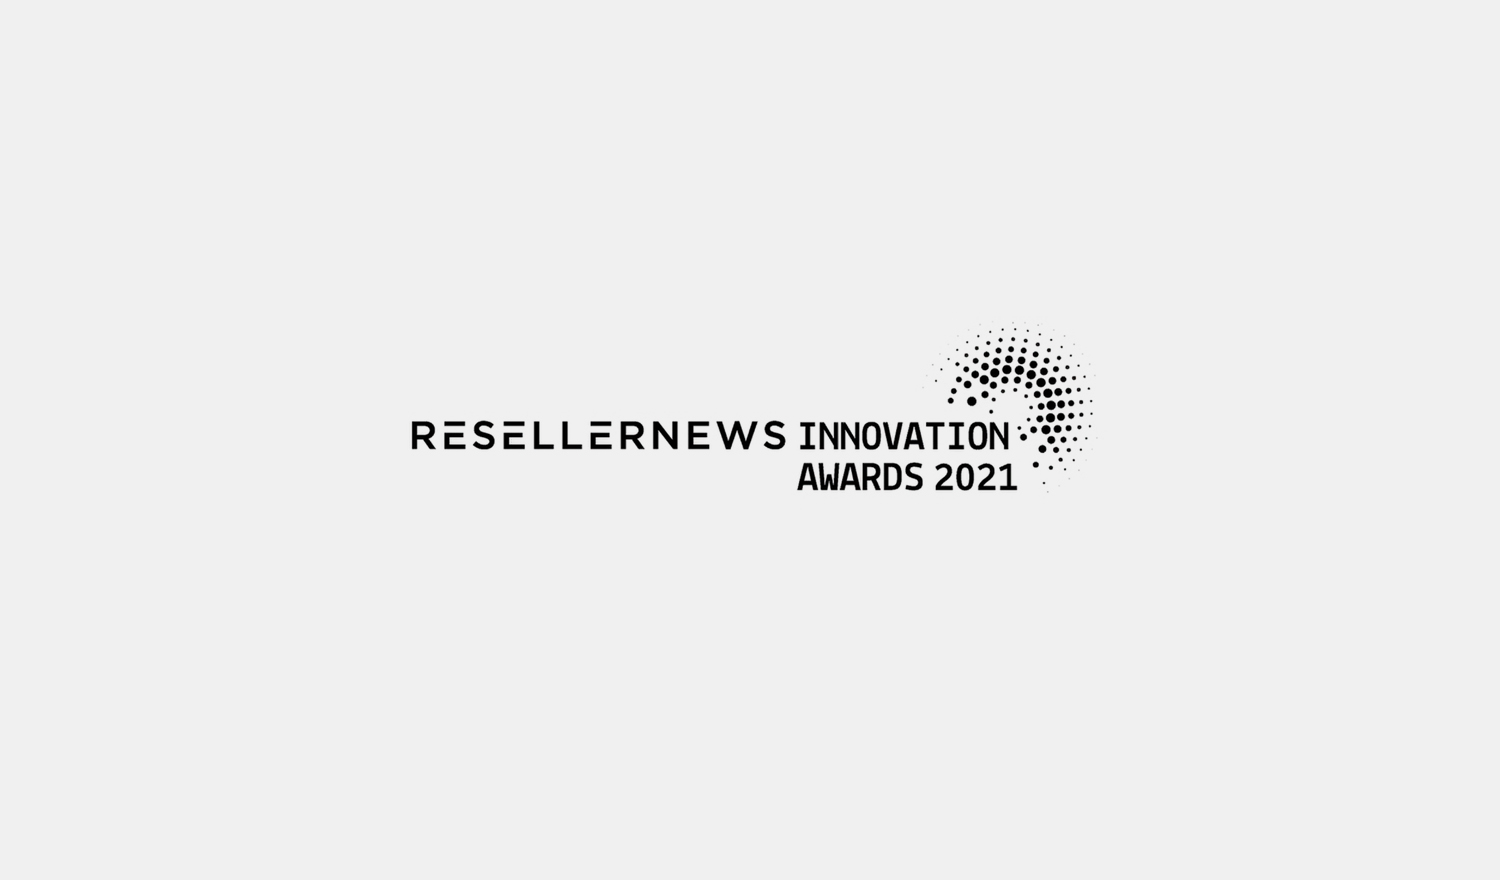 Reseller News Innovation Awards 2021 black and white logo